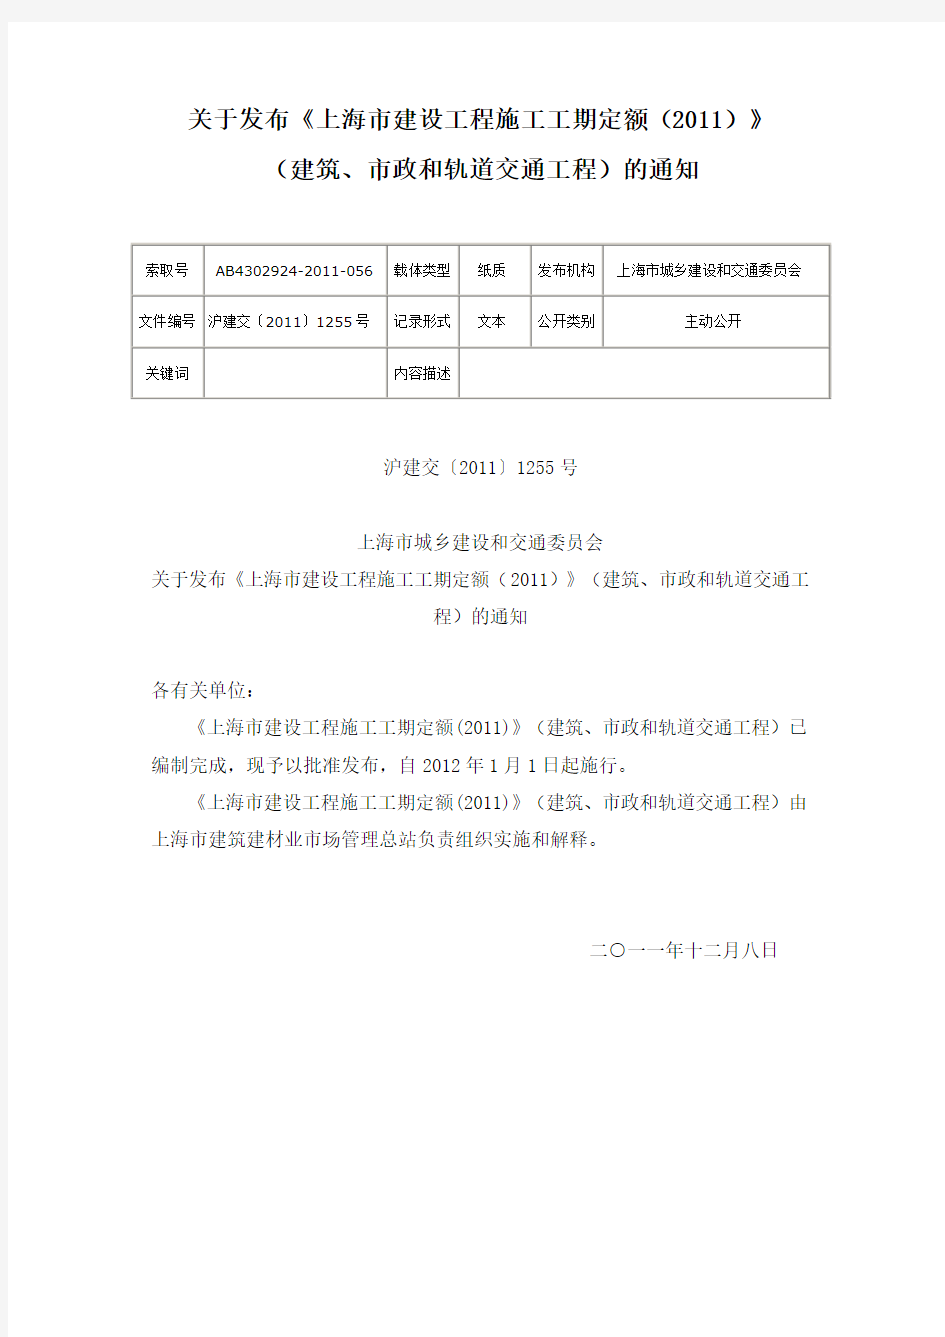 关于发布《上海市建设工程施工工期定额(2011)》